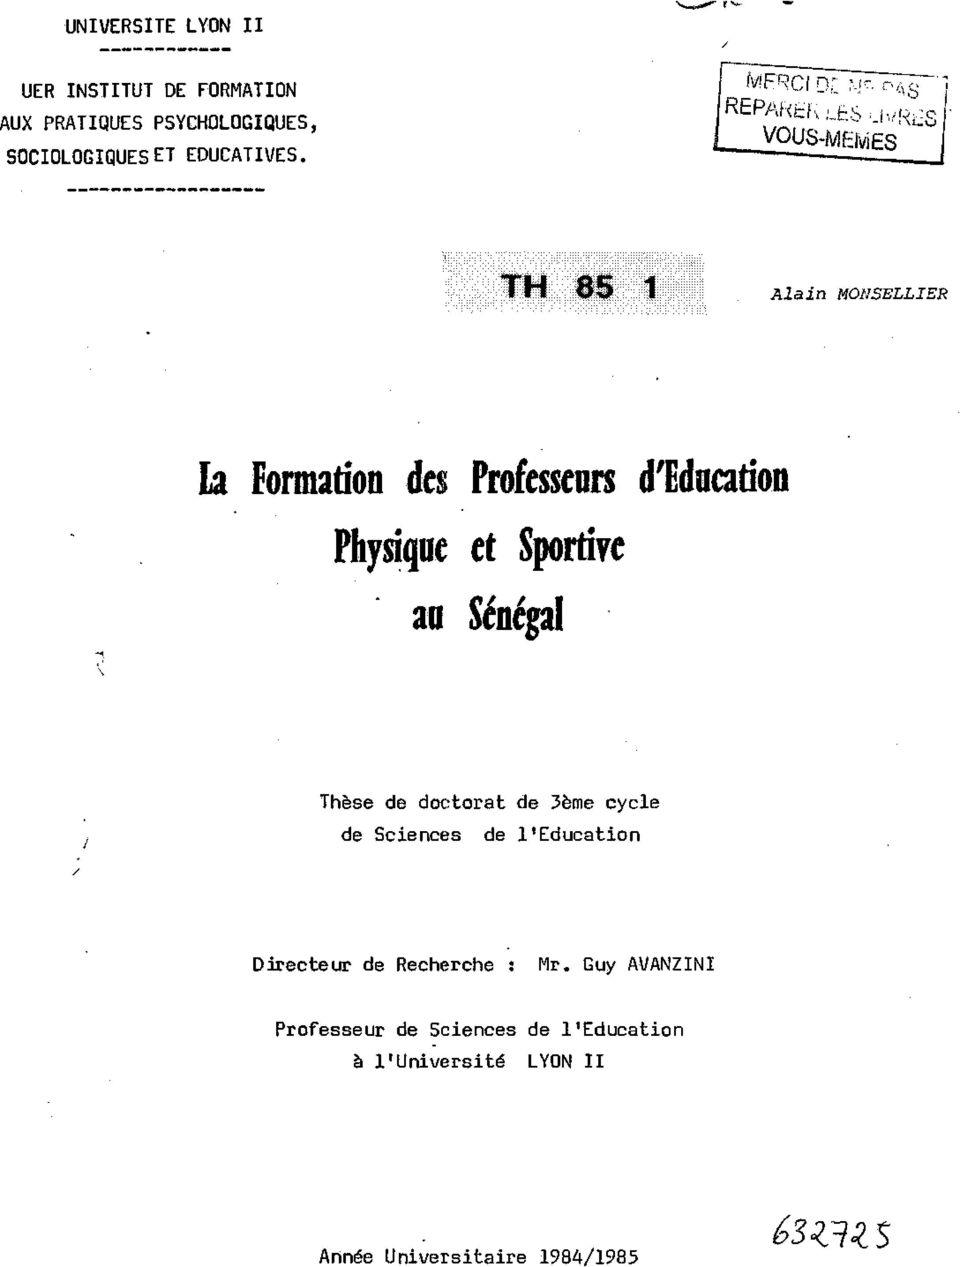 TH 85 1 Alain MONSELLIER la Formation des Professeurs Physique et Sportive an Sénégal d'education